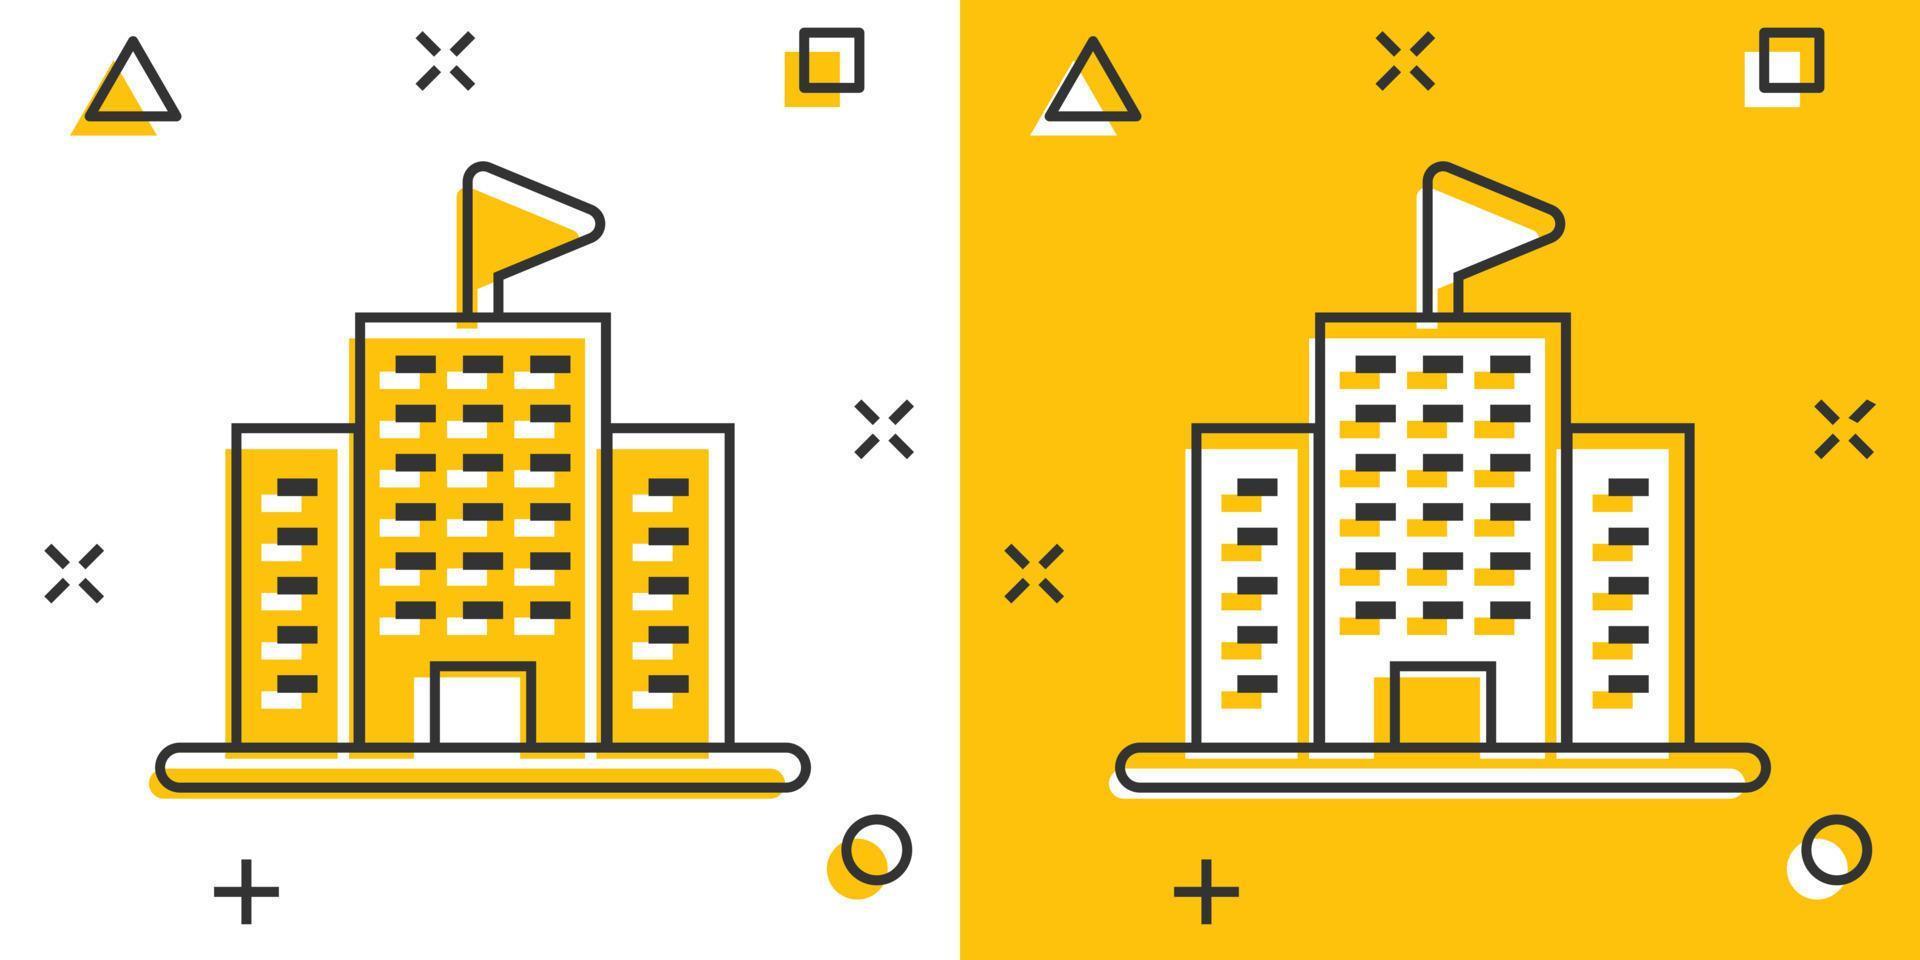 byggnad ikon i komisk stil. stad skyskrapa lägenhet tecknad serie vektor illustration på vit isolerat bakgrund. stad torn stänk effekt företag begrepp.